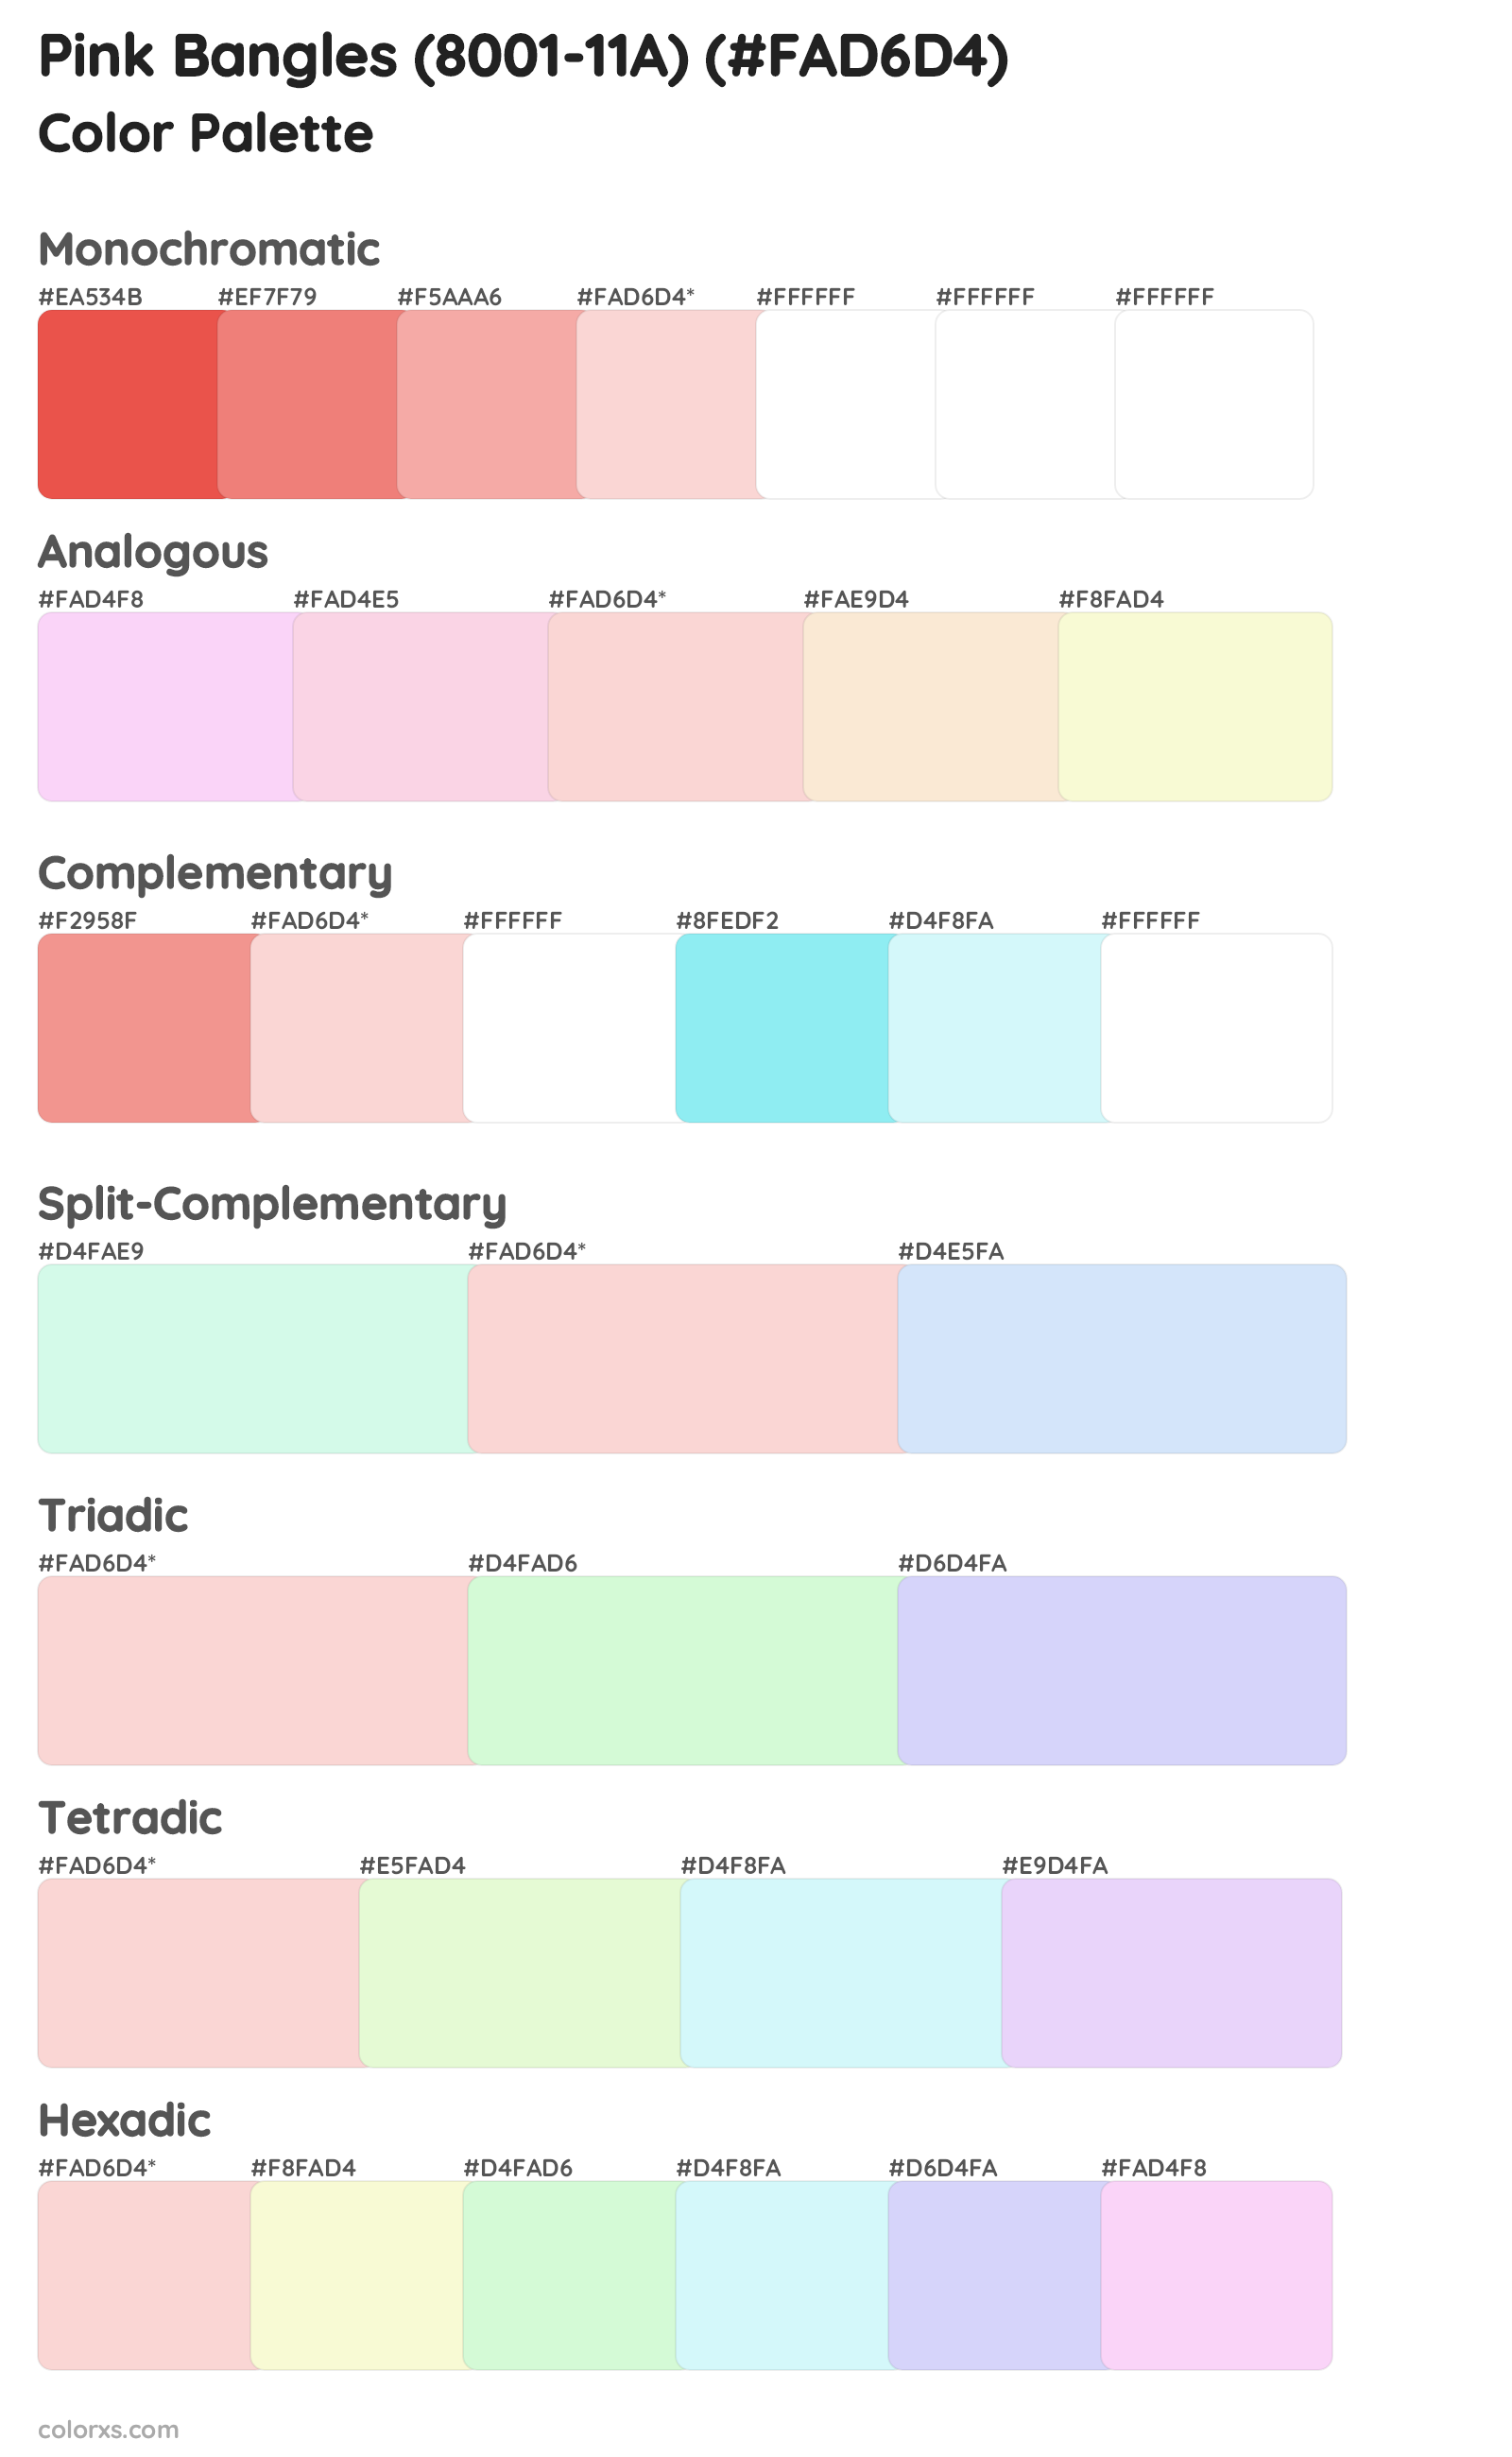 Pink Bangles (8001-11A) Color Scheme Palettes